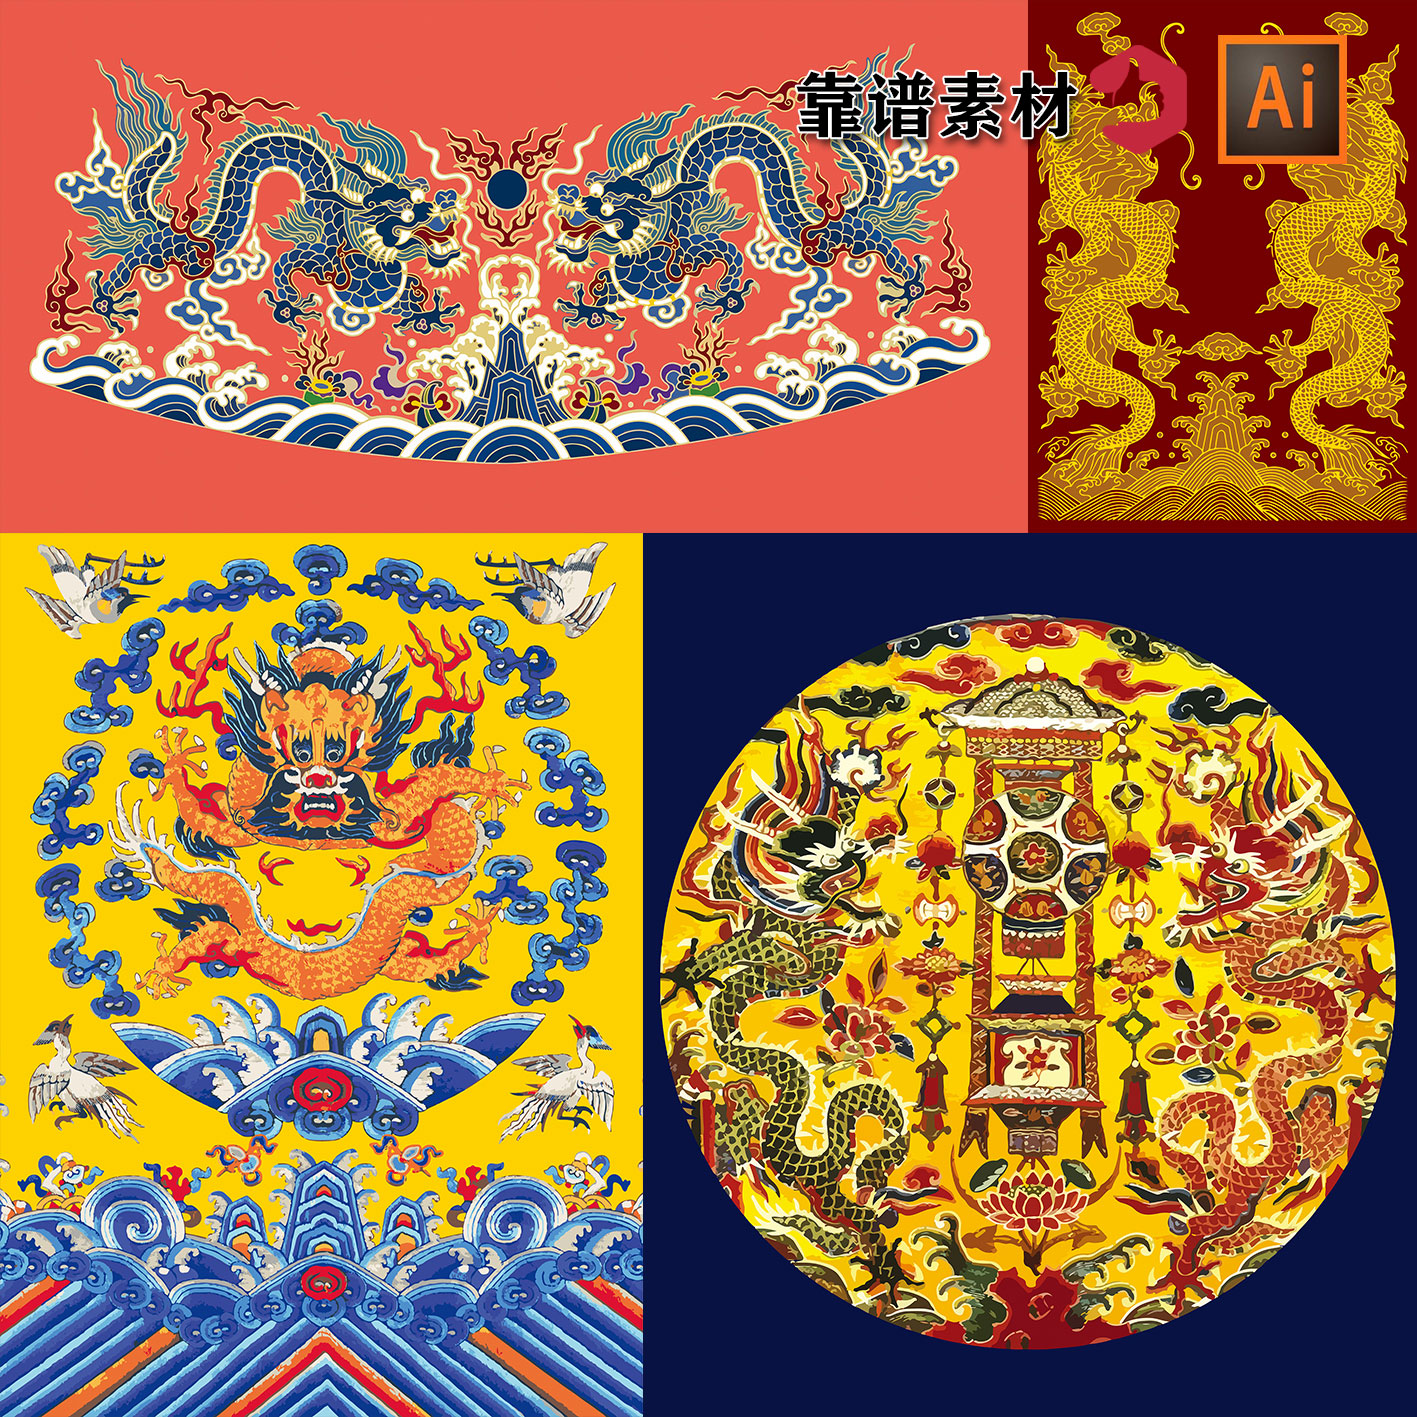 中国风双龙戏珠帝王龙图腾龙图案传统纹样AI矢量设计素材